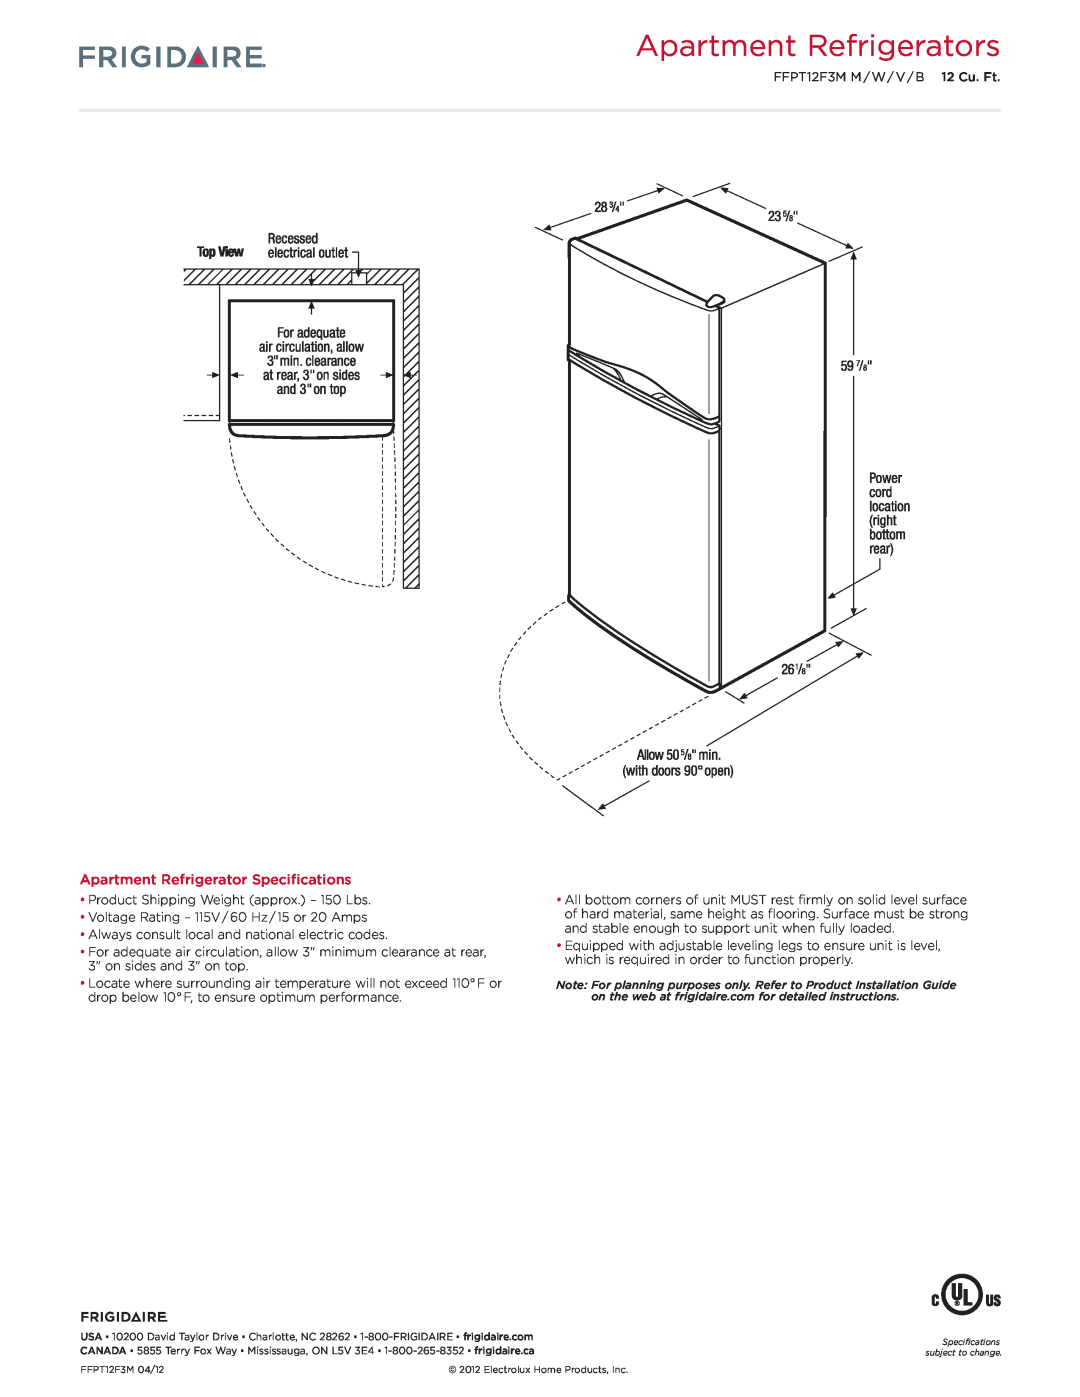 Frigidaire FFPT12F3M dimensions Apartment Refrigerators, Apartment Refrigerator Specifications 